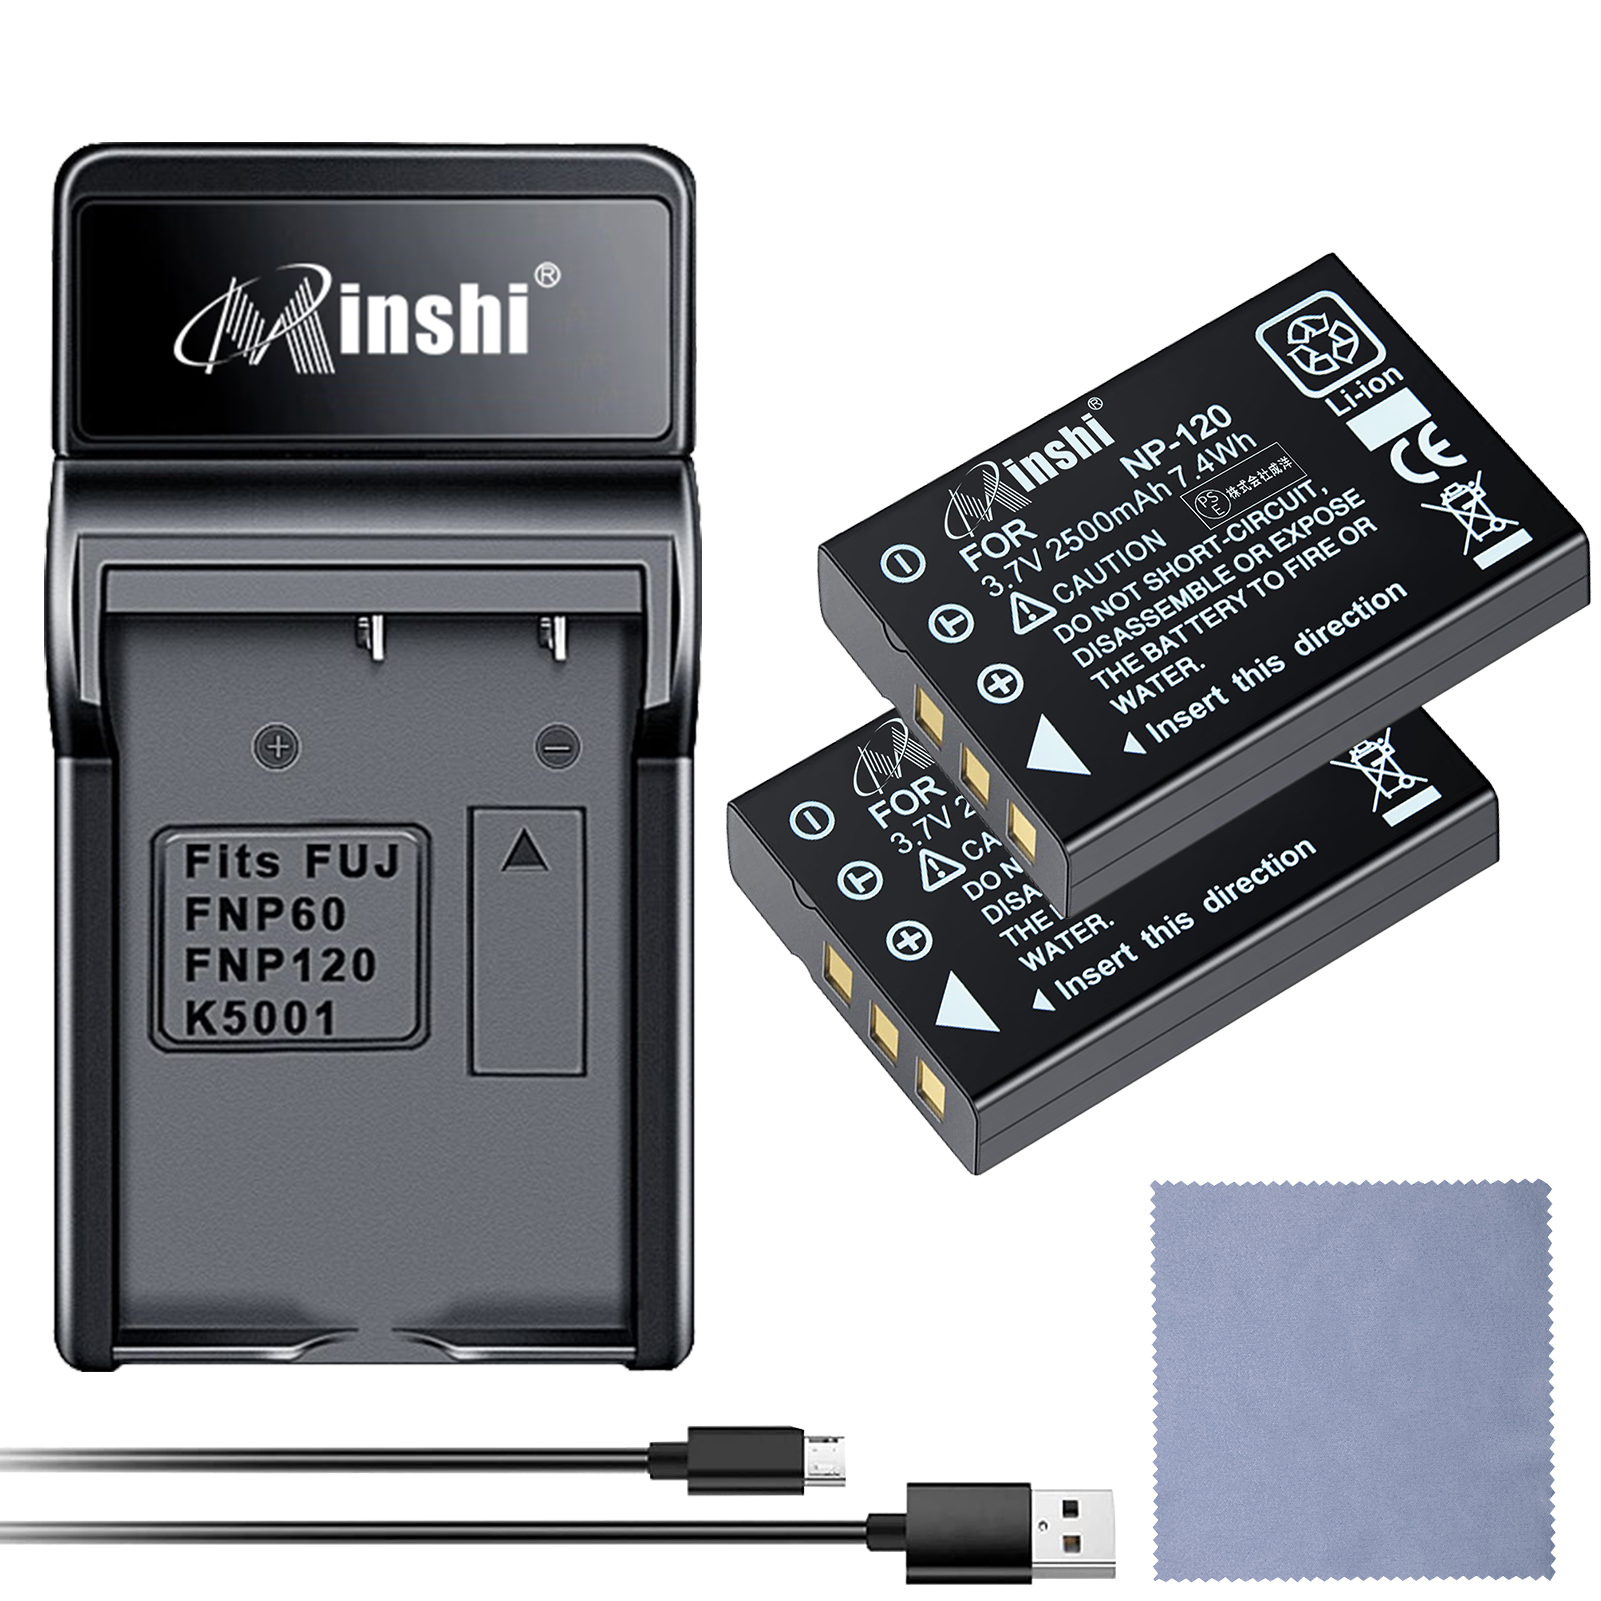 【セット】minshi FUJIFILM Caplio 500G wide DB-43 【2500mAh 3.7V】 高品質交換用バッテリー【2個】